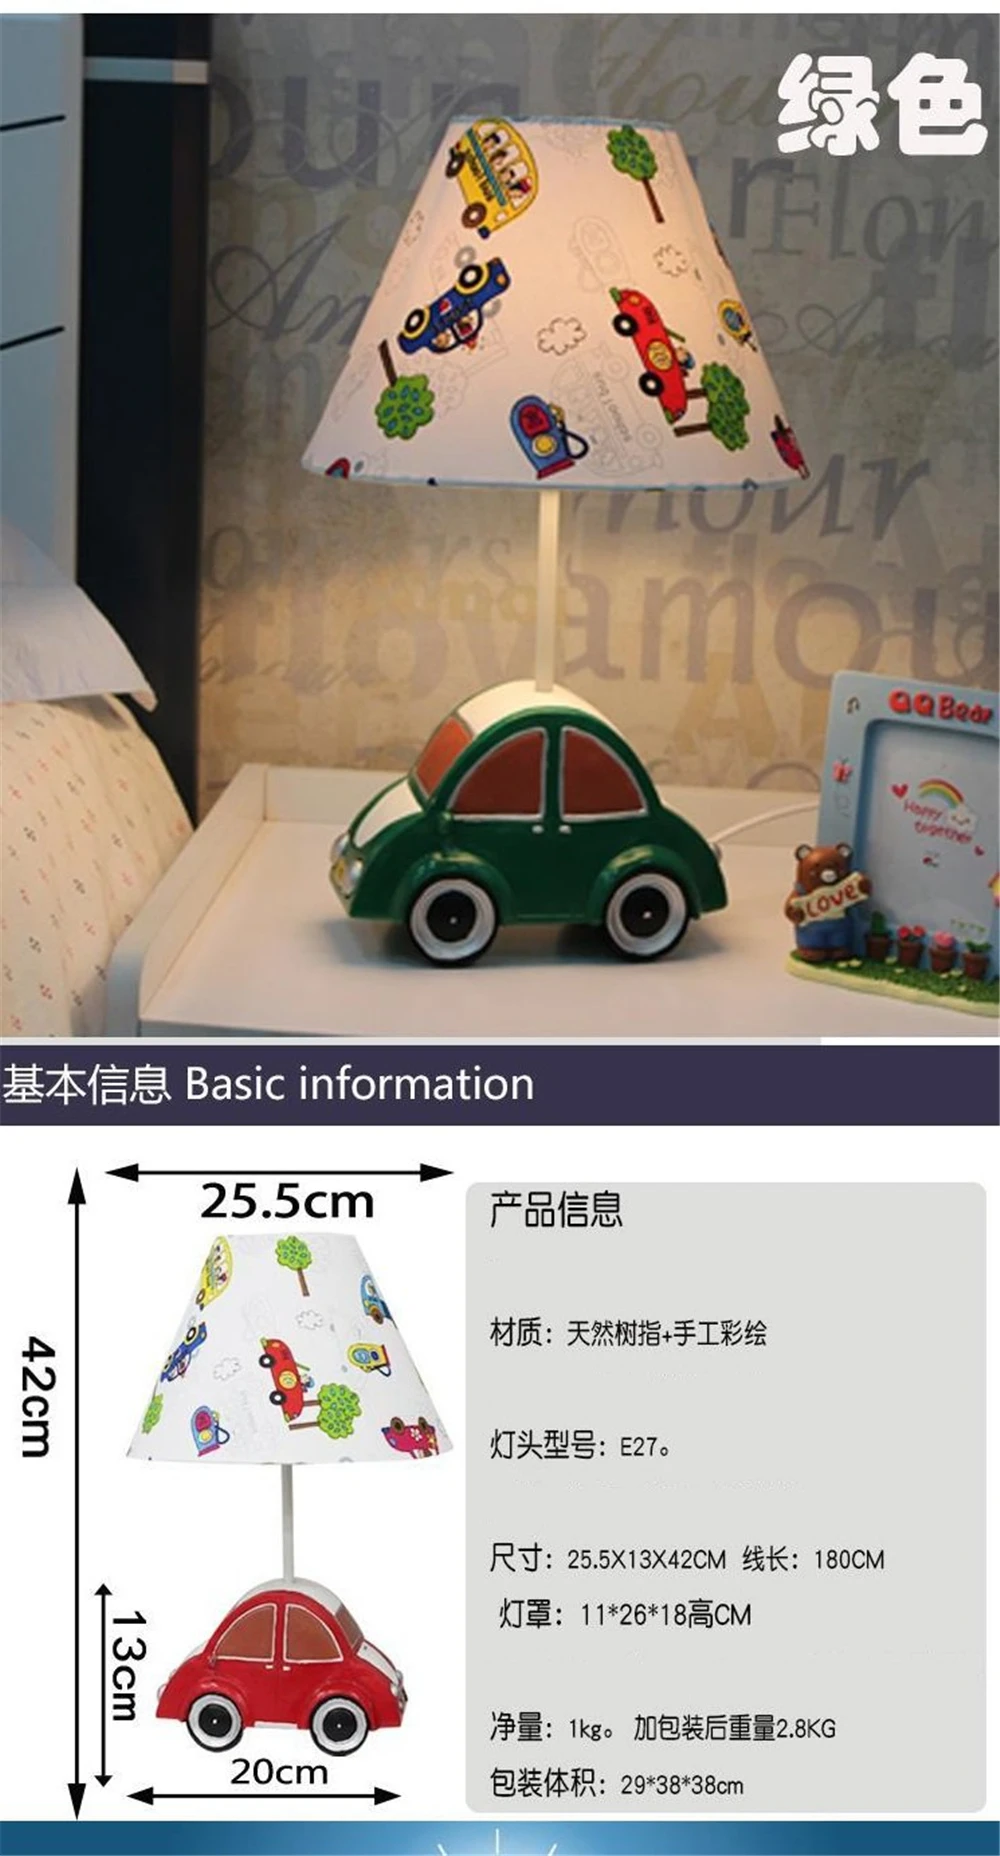 Креативная мультипликационная форма автомобиля настольные лампы для прикроватных спальни для учебы в детской комнате настольные лампы для детей подарок на день рождения Детская лампа Led